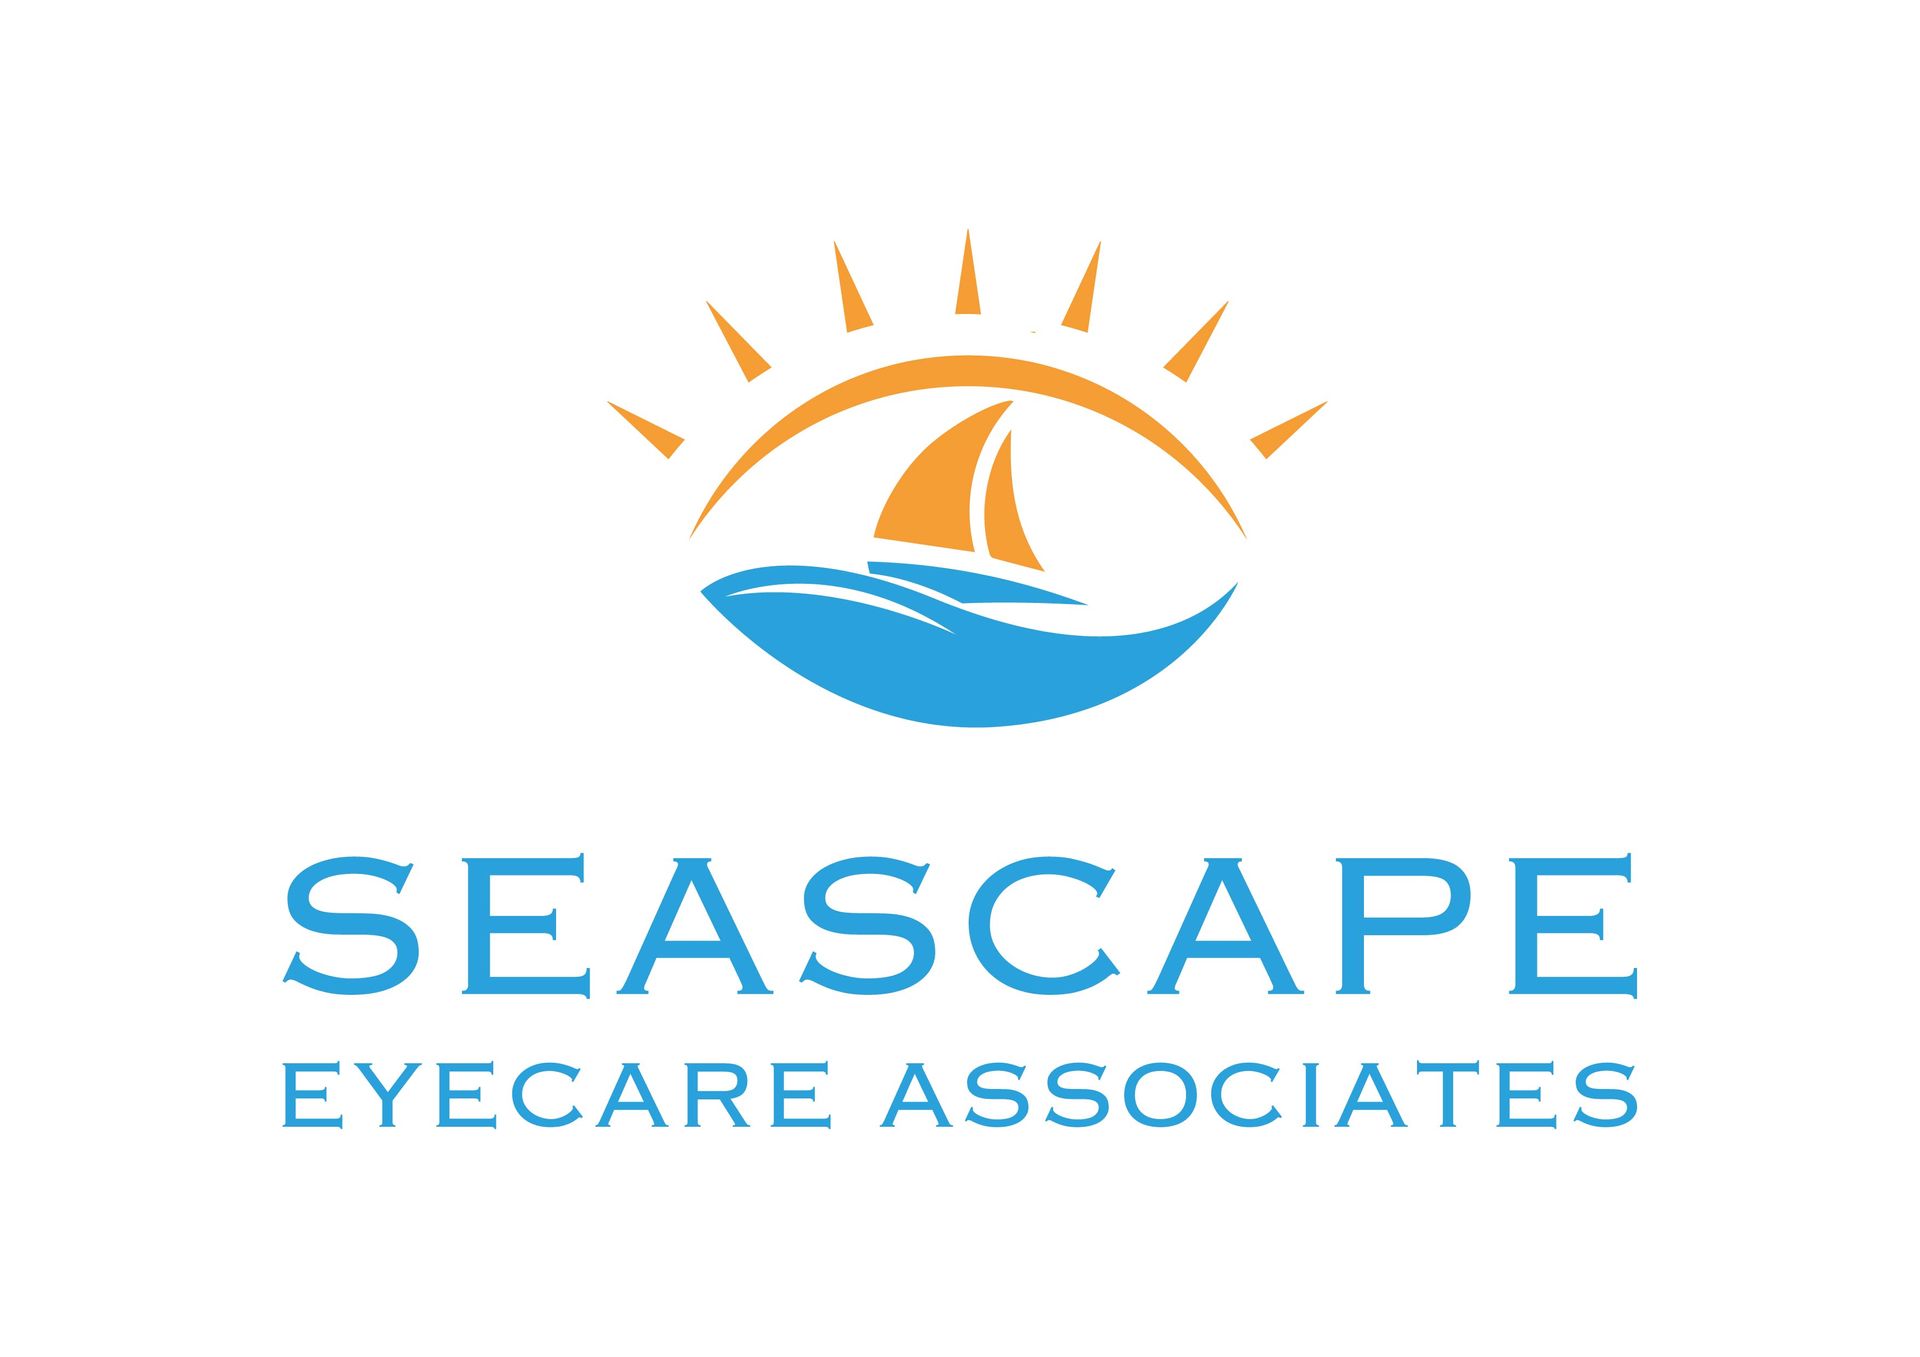 Seascape Eyecare Associates